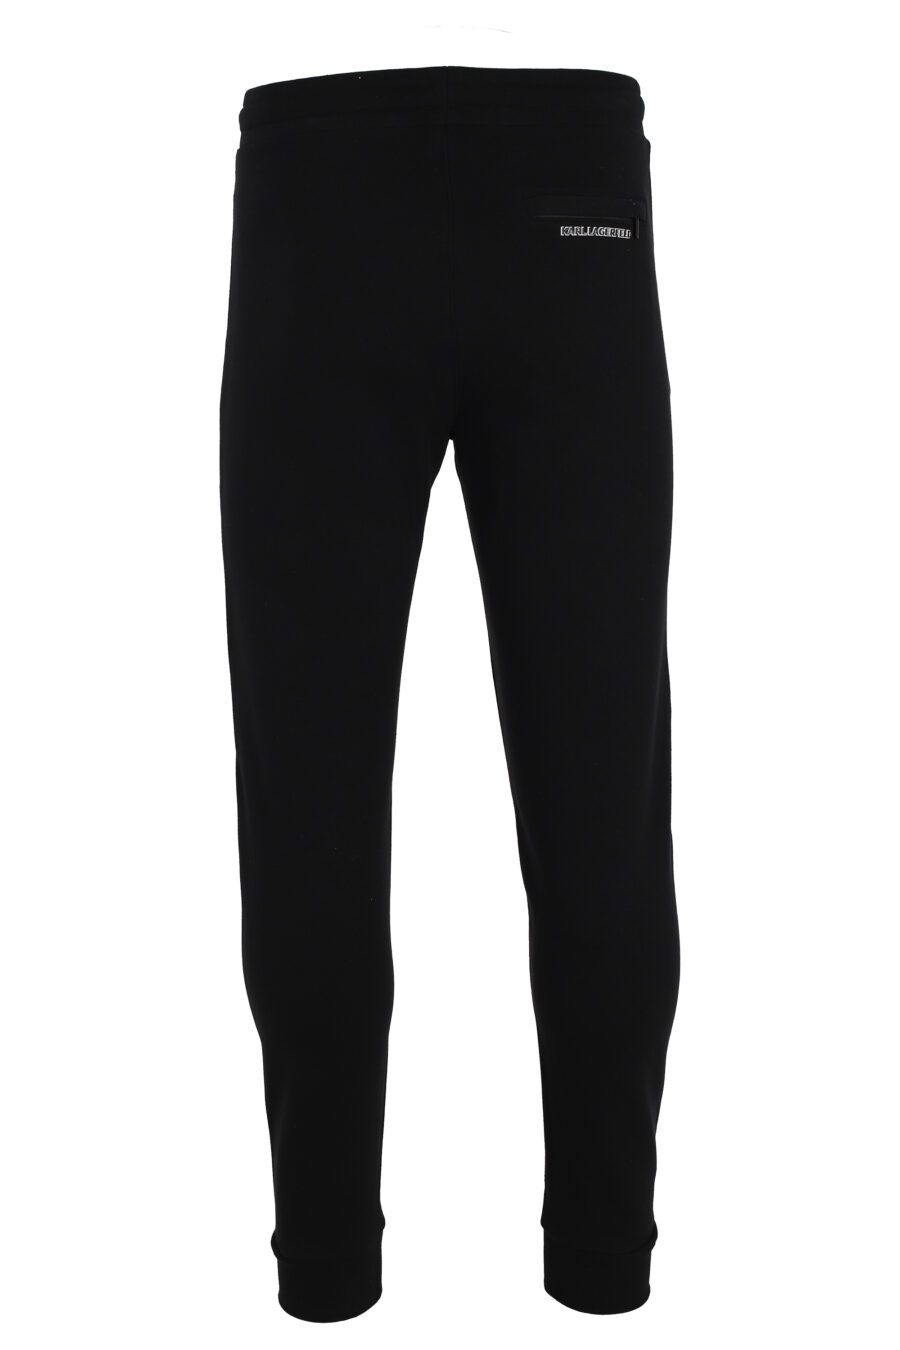 Pantalón de chándal negro con logo 3D pequeño - IMG 4821